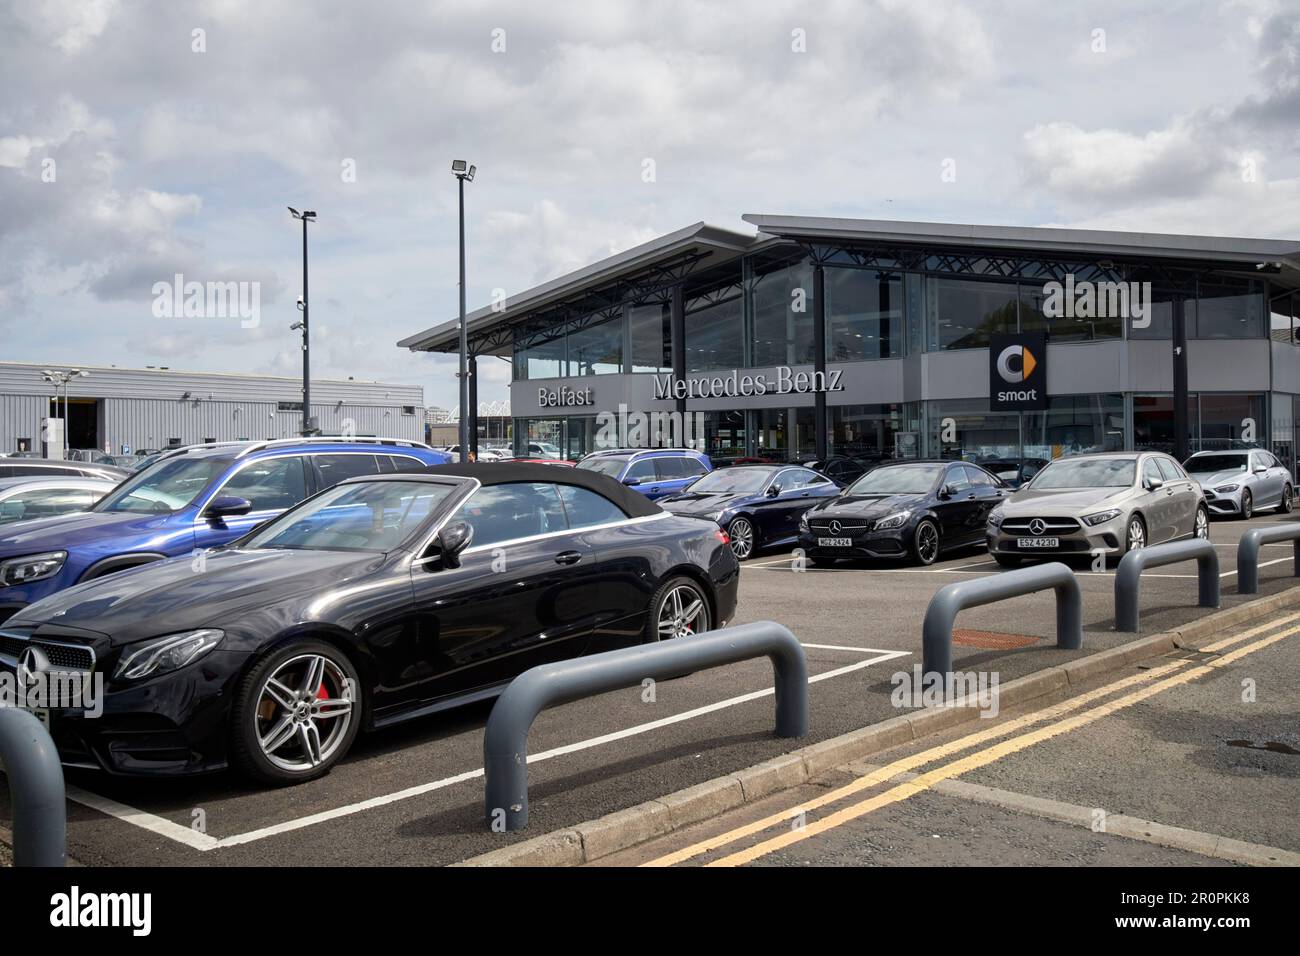 belfast mercedes benz and smart car dealership Belfast, Northern Ireland, uk Stock Photo